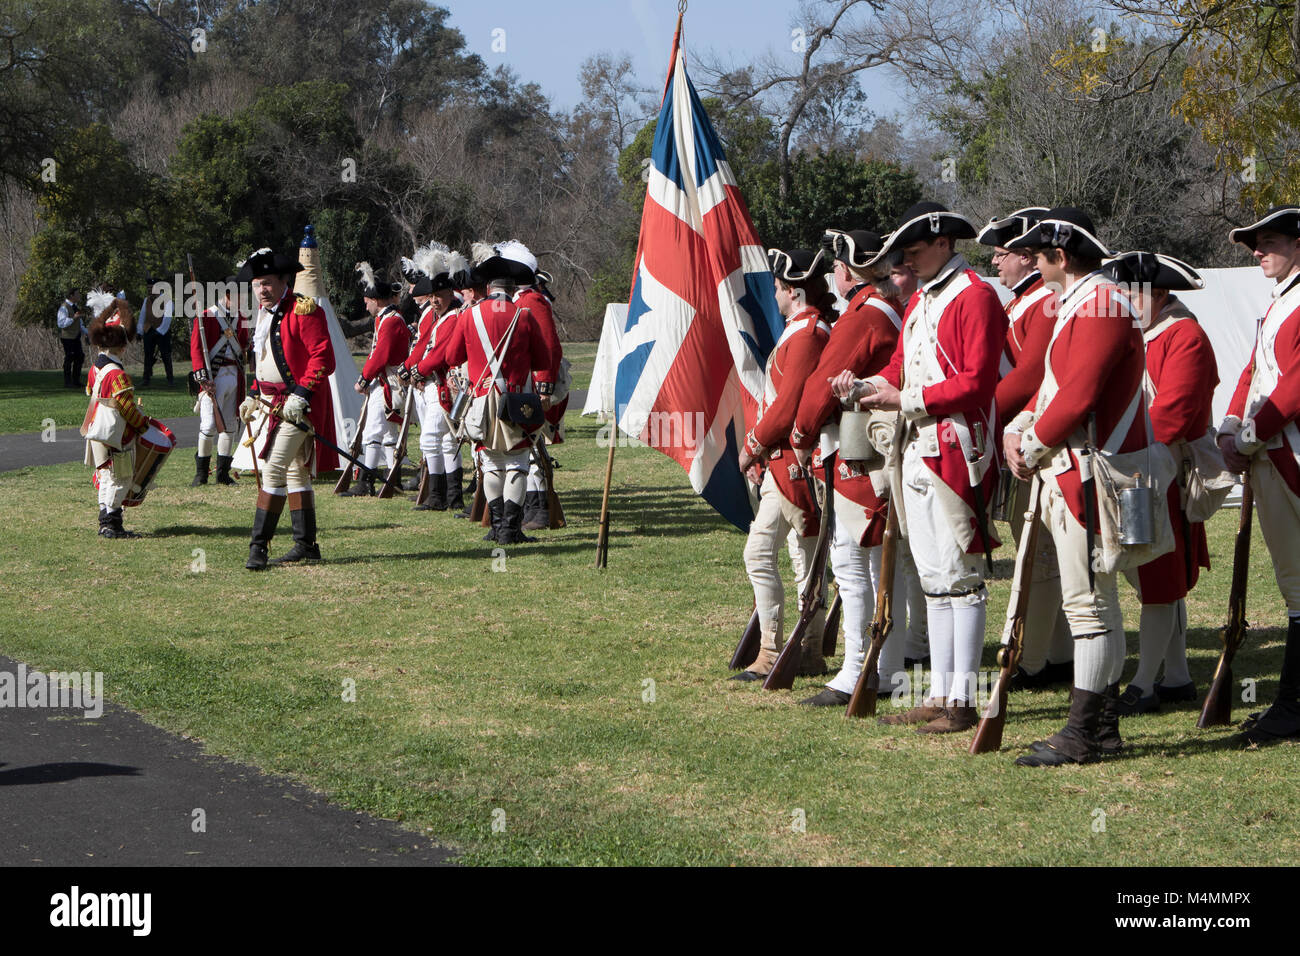 Des soldats anglais au cours d'une reconstitution de la révolution américaine dans 'Huntington central park' Huntington Beach Californie USA Banque D'Images